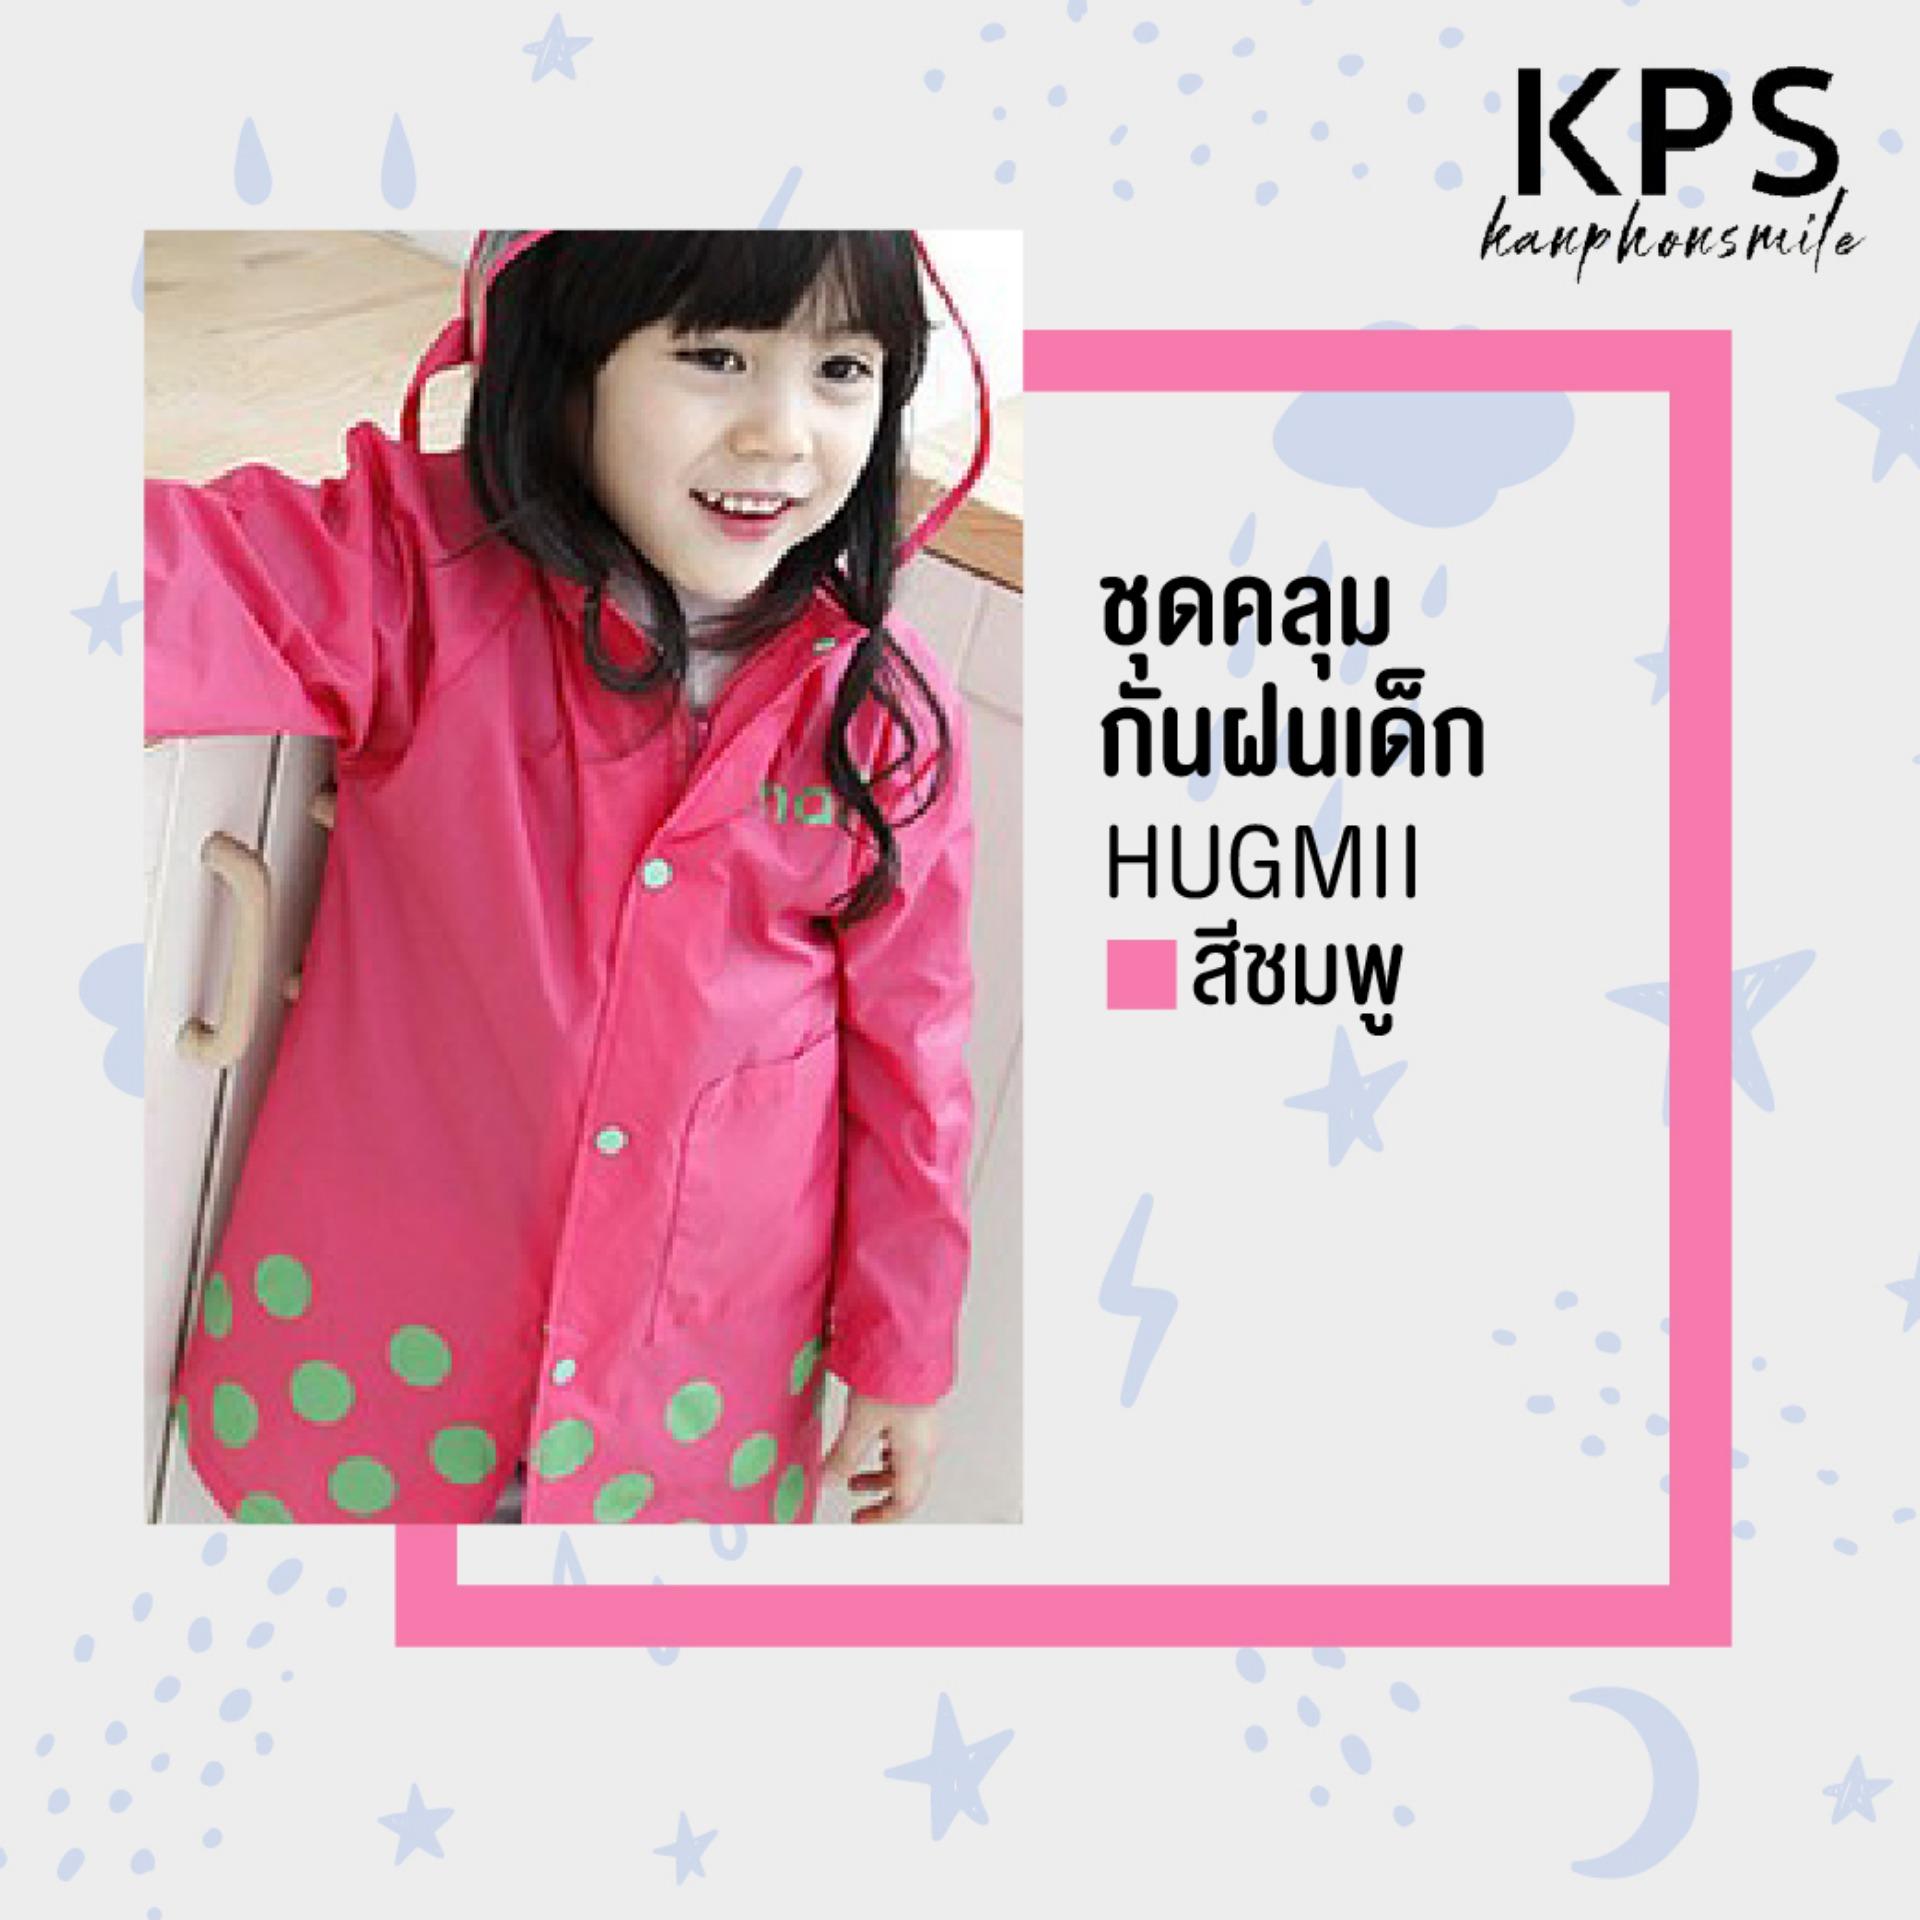 Kanphonsmile ชุดกันฝนเด็ก เสื้อกันฝนเด็ก HUGMII ลายน่ารัก สีสดใส ทำจากพลาสติก EVA 100% ปลอดภัยต่อเด็ก มาพร้อมกระเป๋าจัดเก็บ